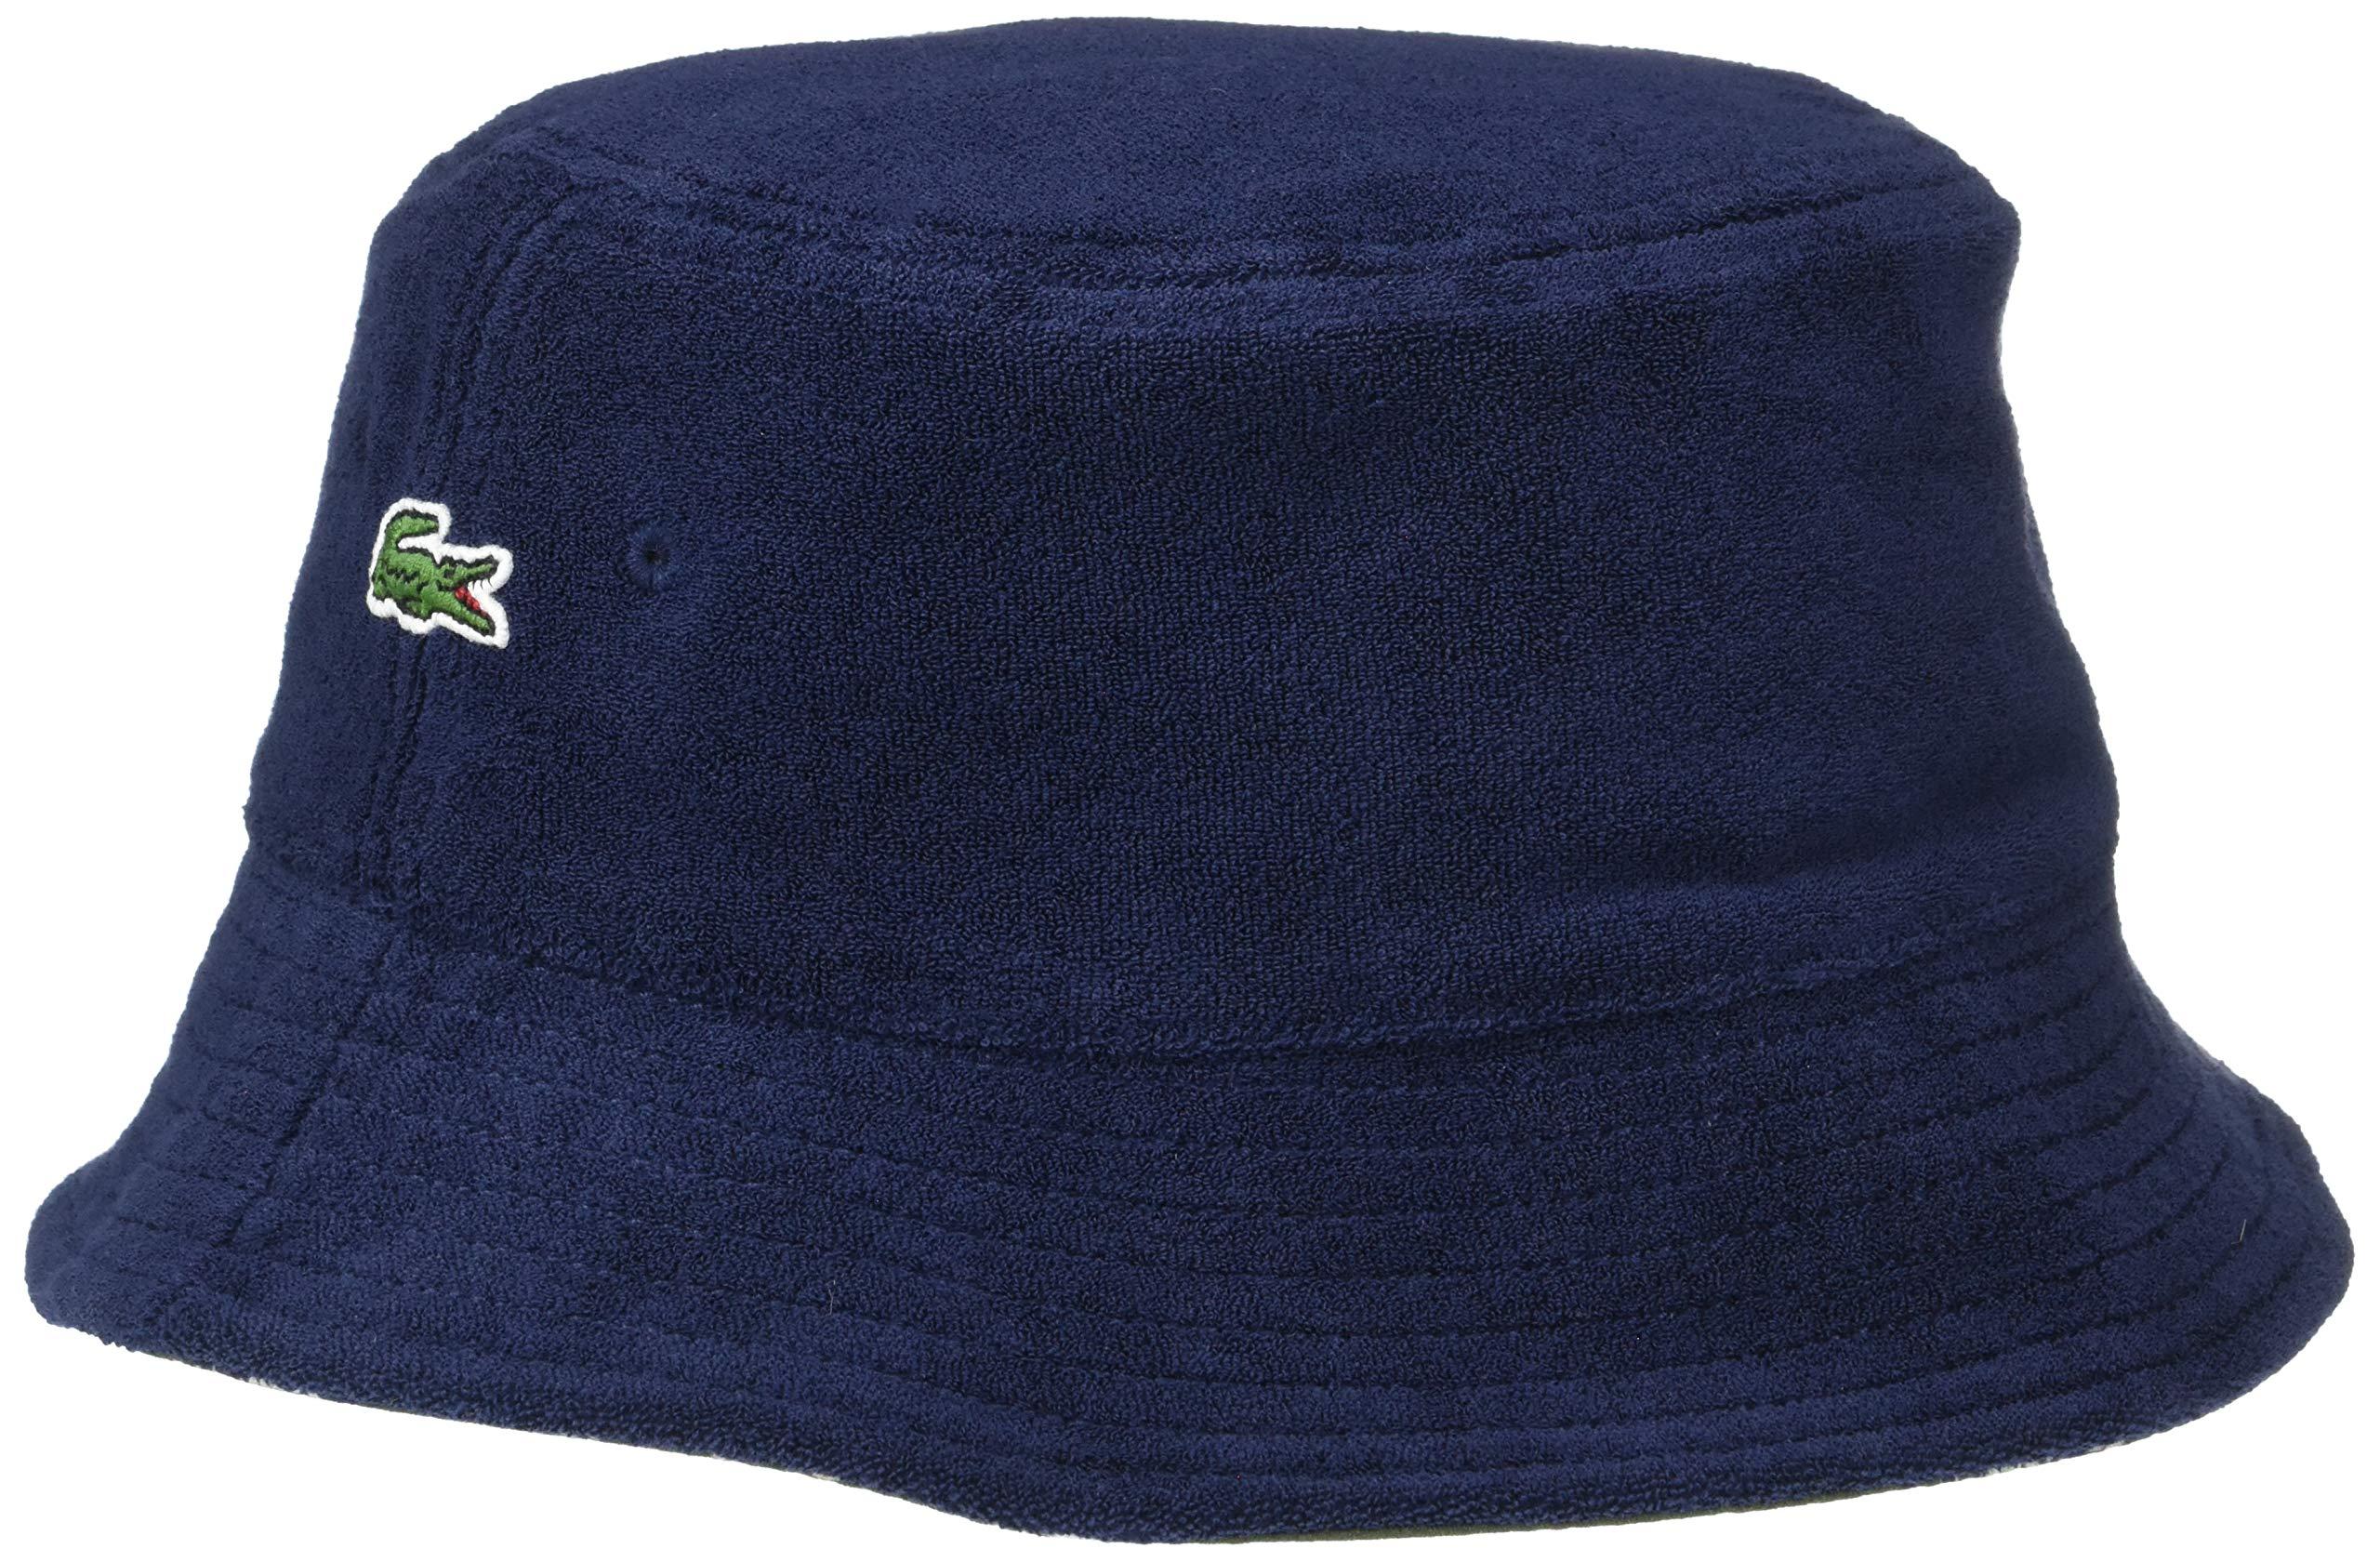 Lacoste Reversible Bucket Hat in Navy Blue (Blue) for Men - Lyst